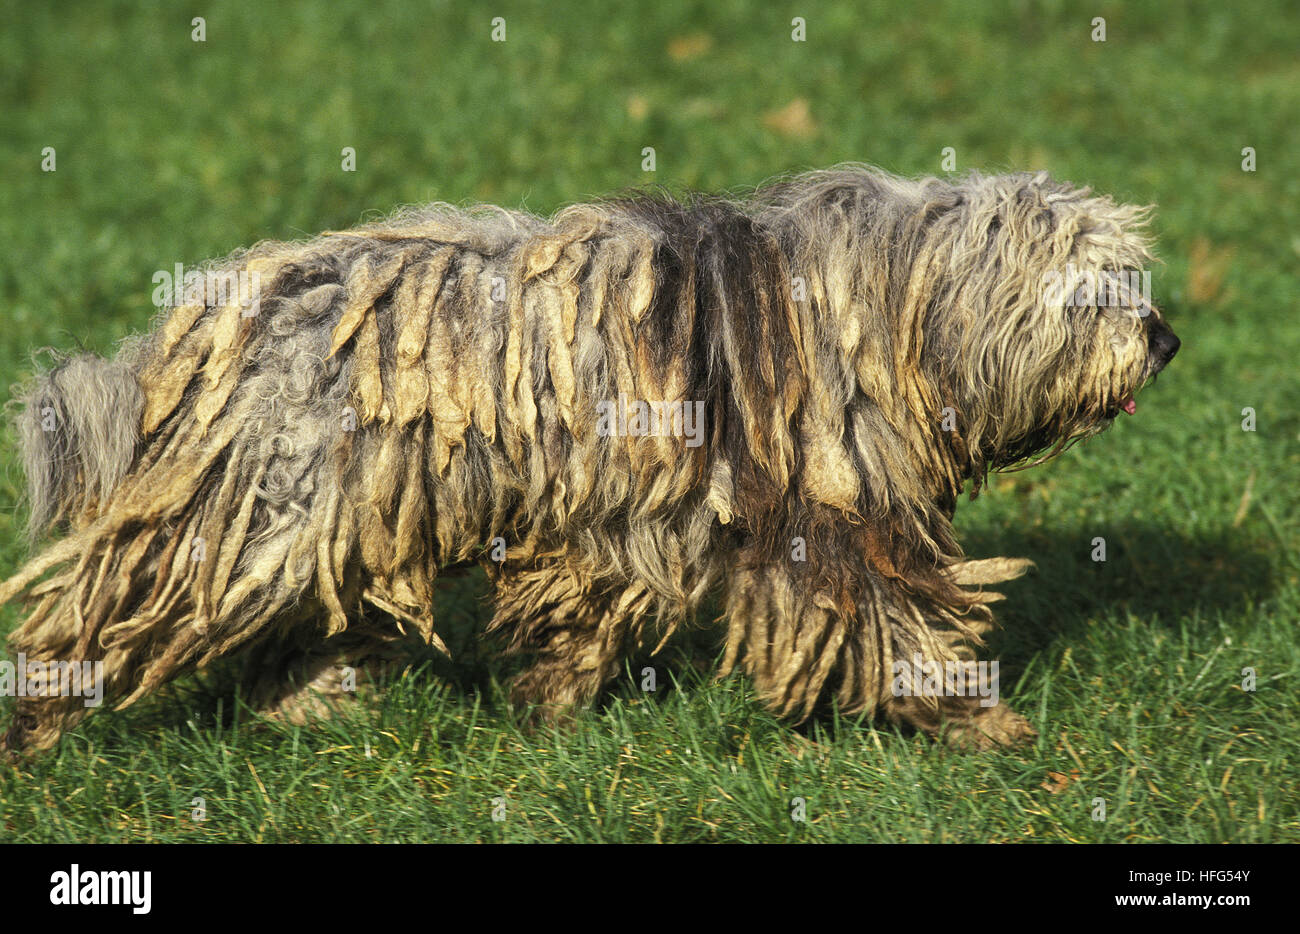 Bergamasco Sheepdog or Bergamese Shepherd , Adult standing on Grass Stock Photo